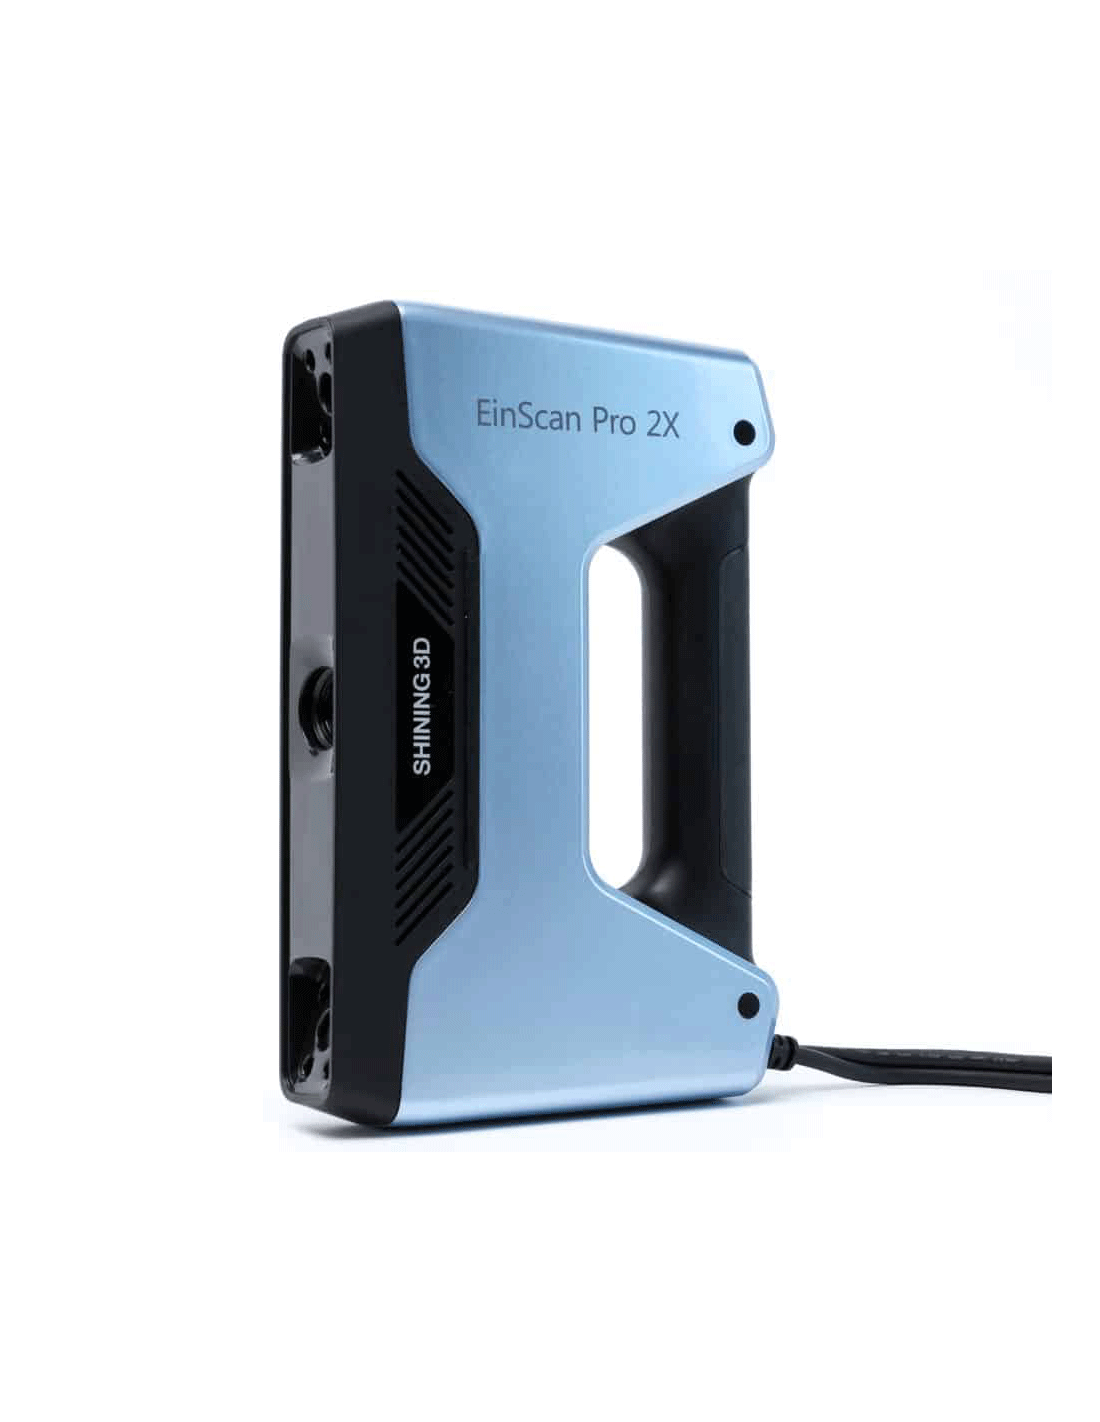 Shining 3D EinScan Pro 2X 2020 - Scanner 3D